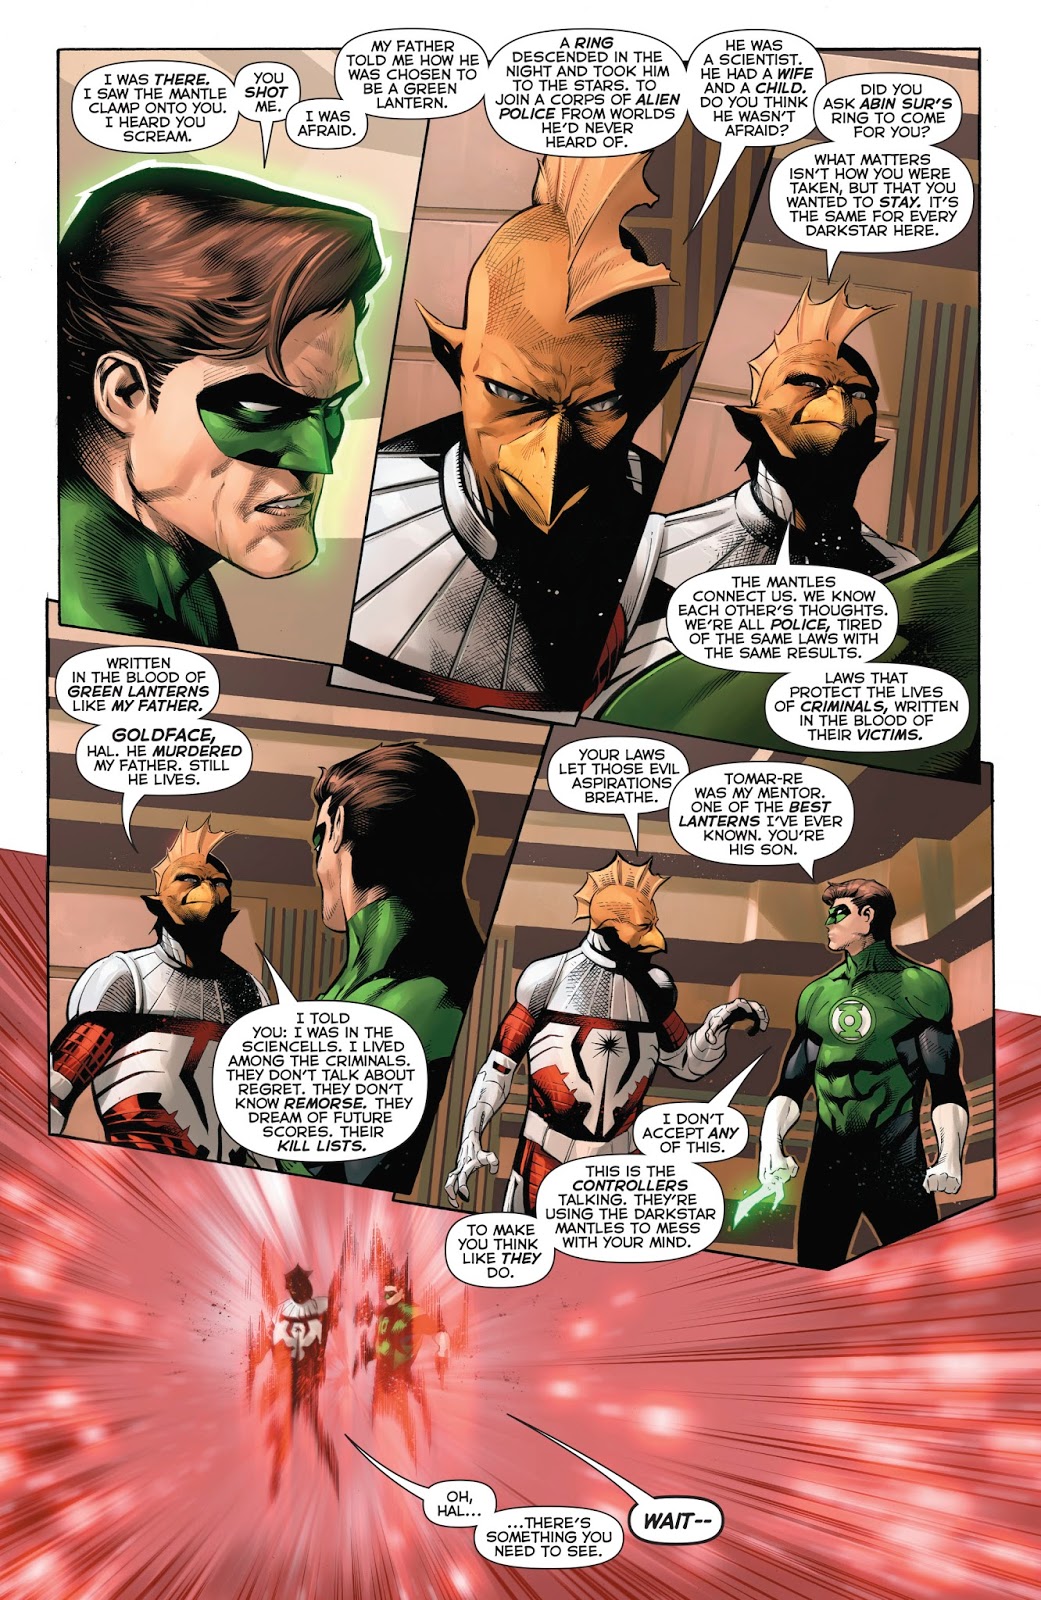 Darkstar Tomar-Tu Tries To Recruit Hal Jordan